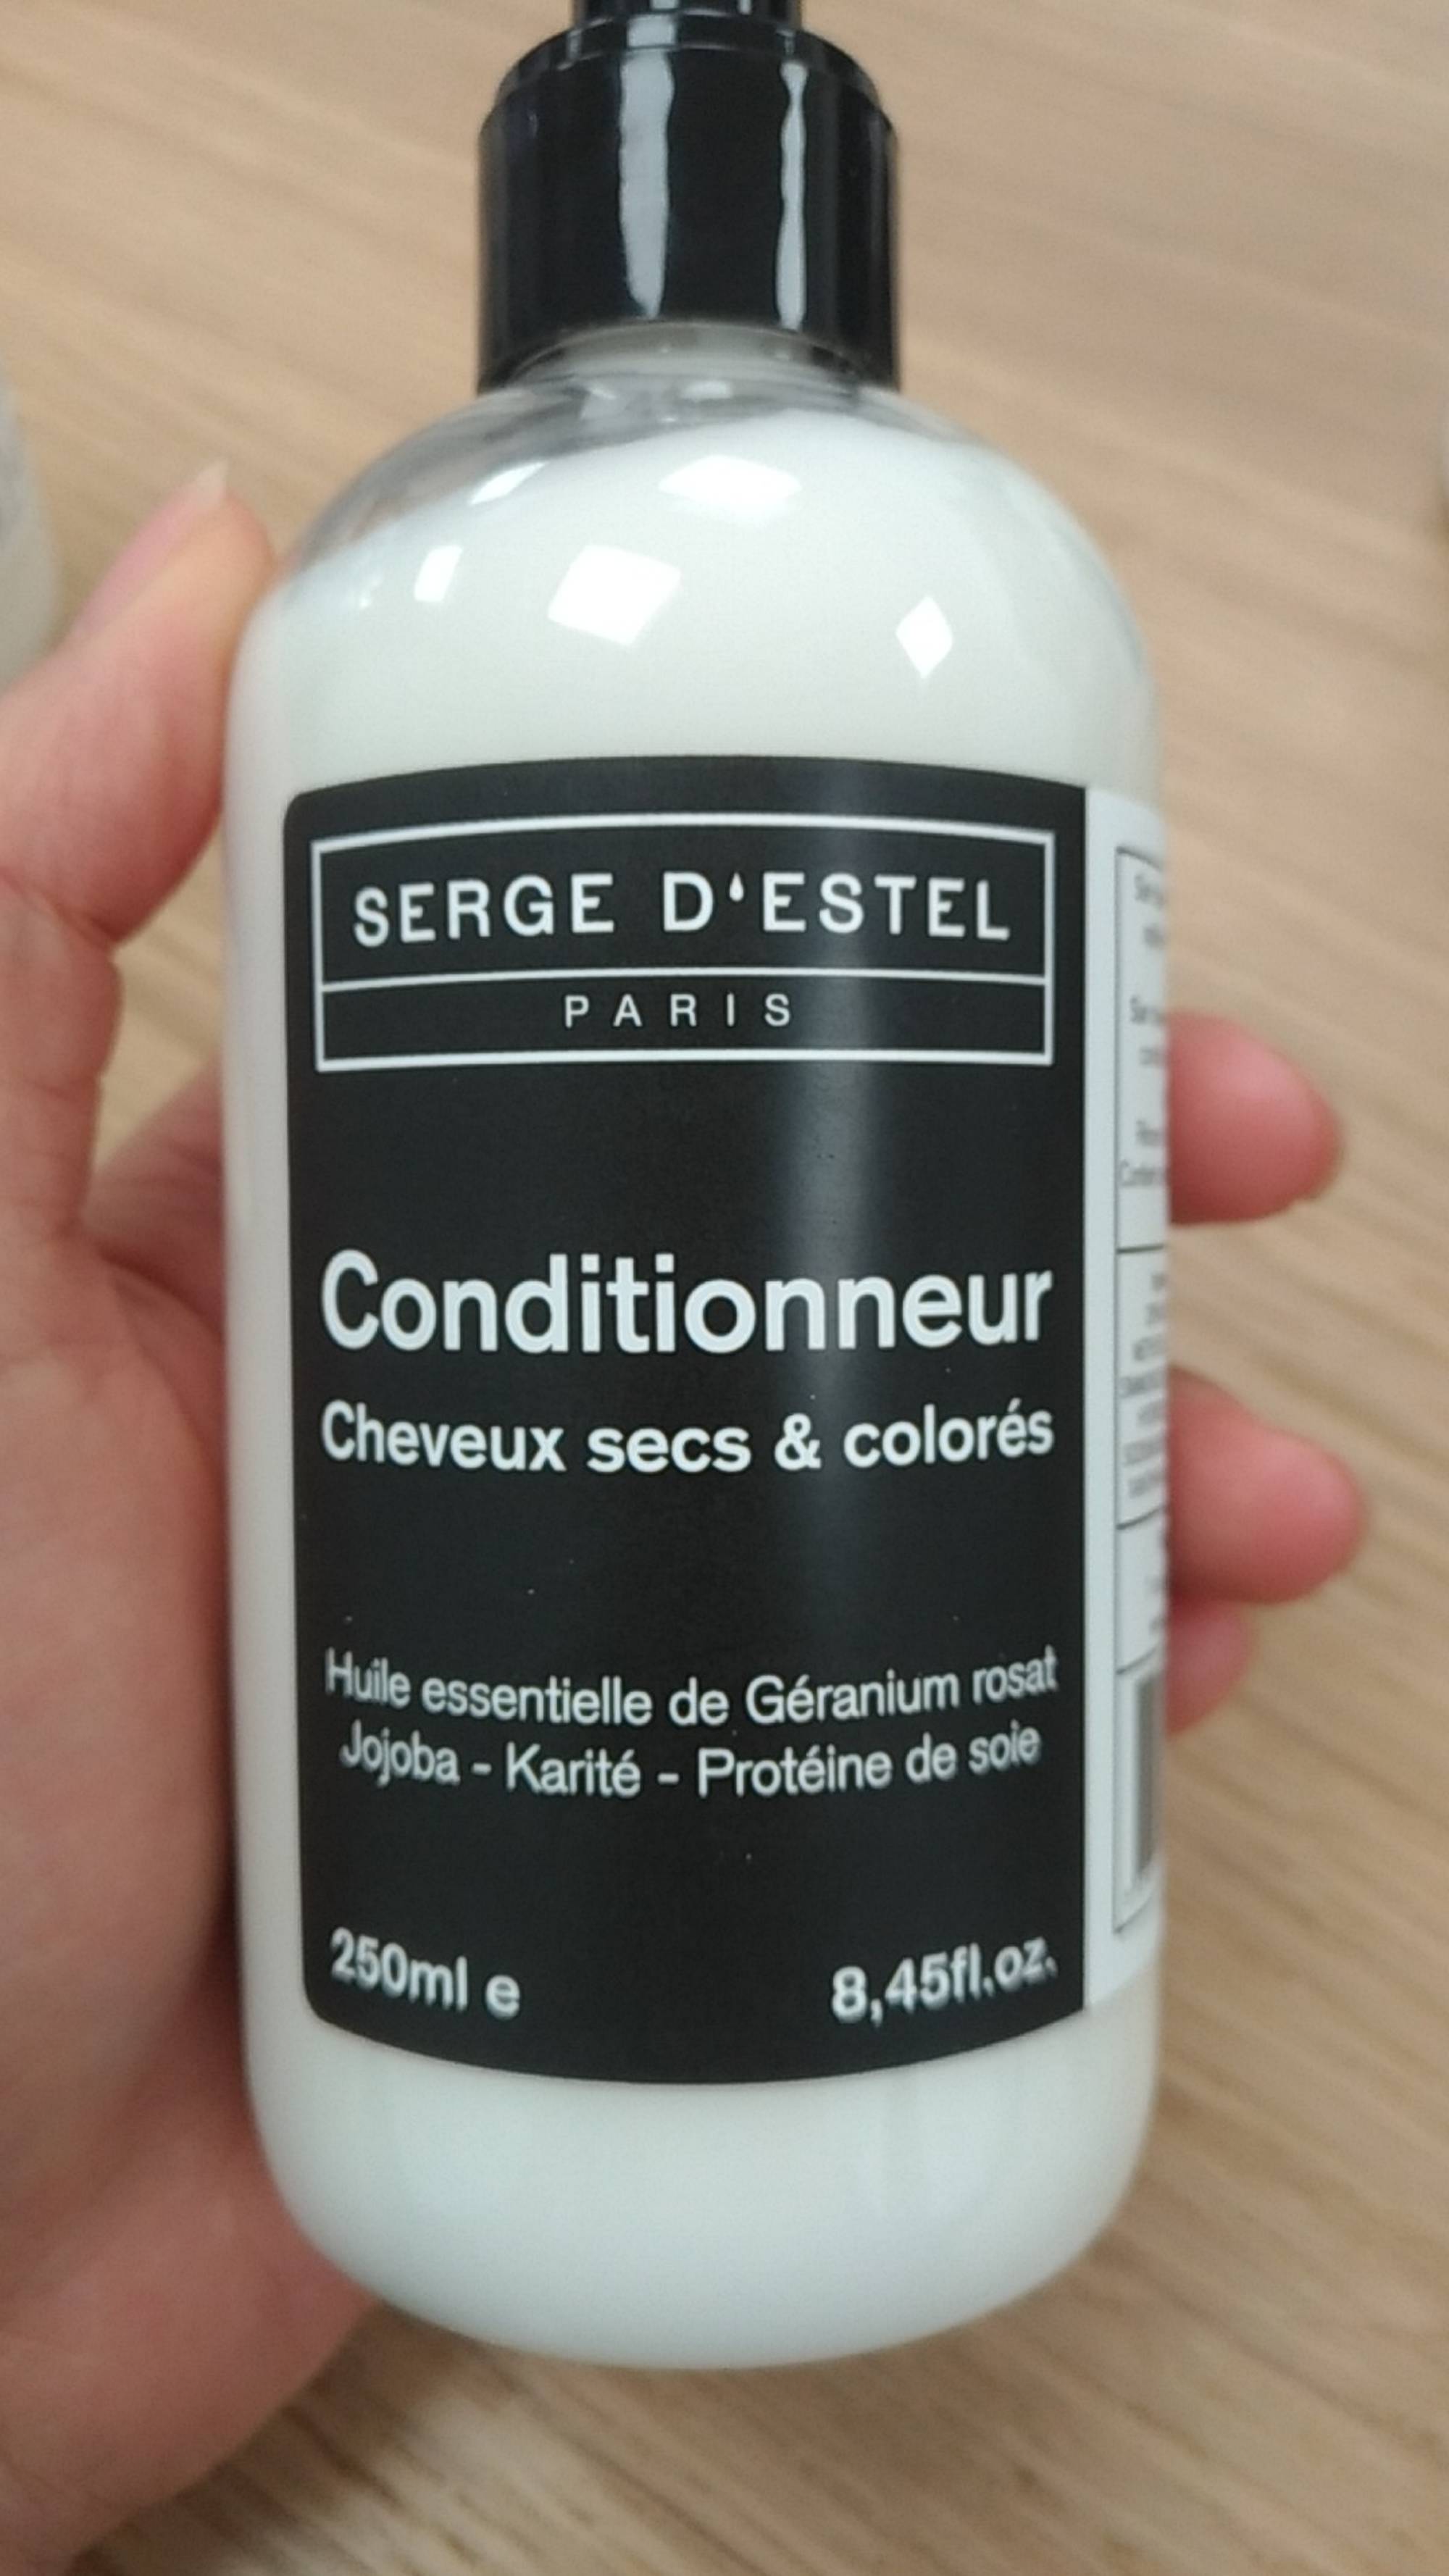 SERGE D'ESTEL - Conditionneur cheveux secs & colorés